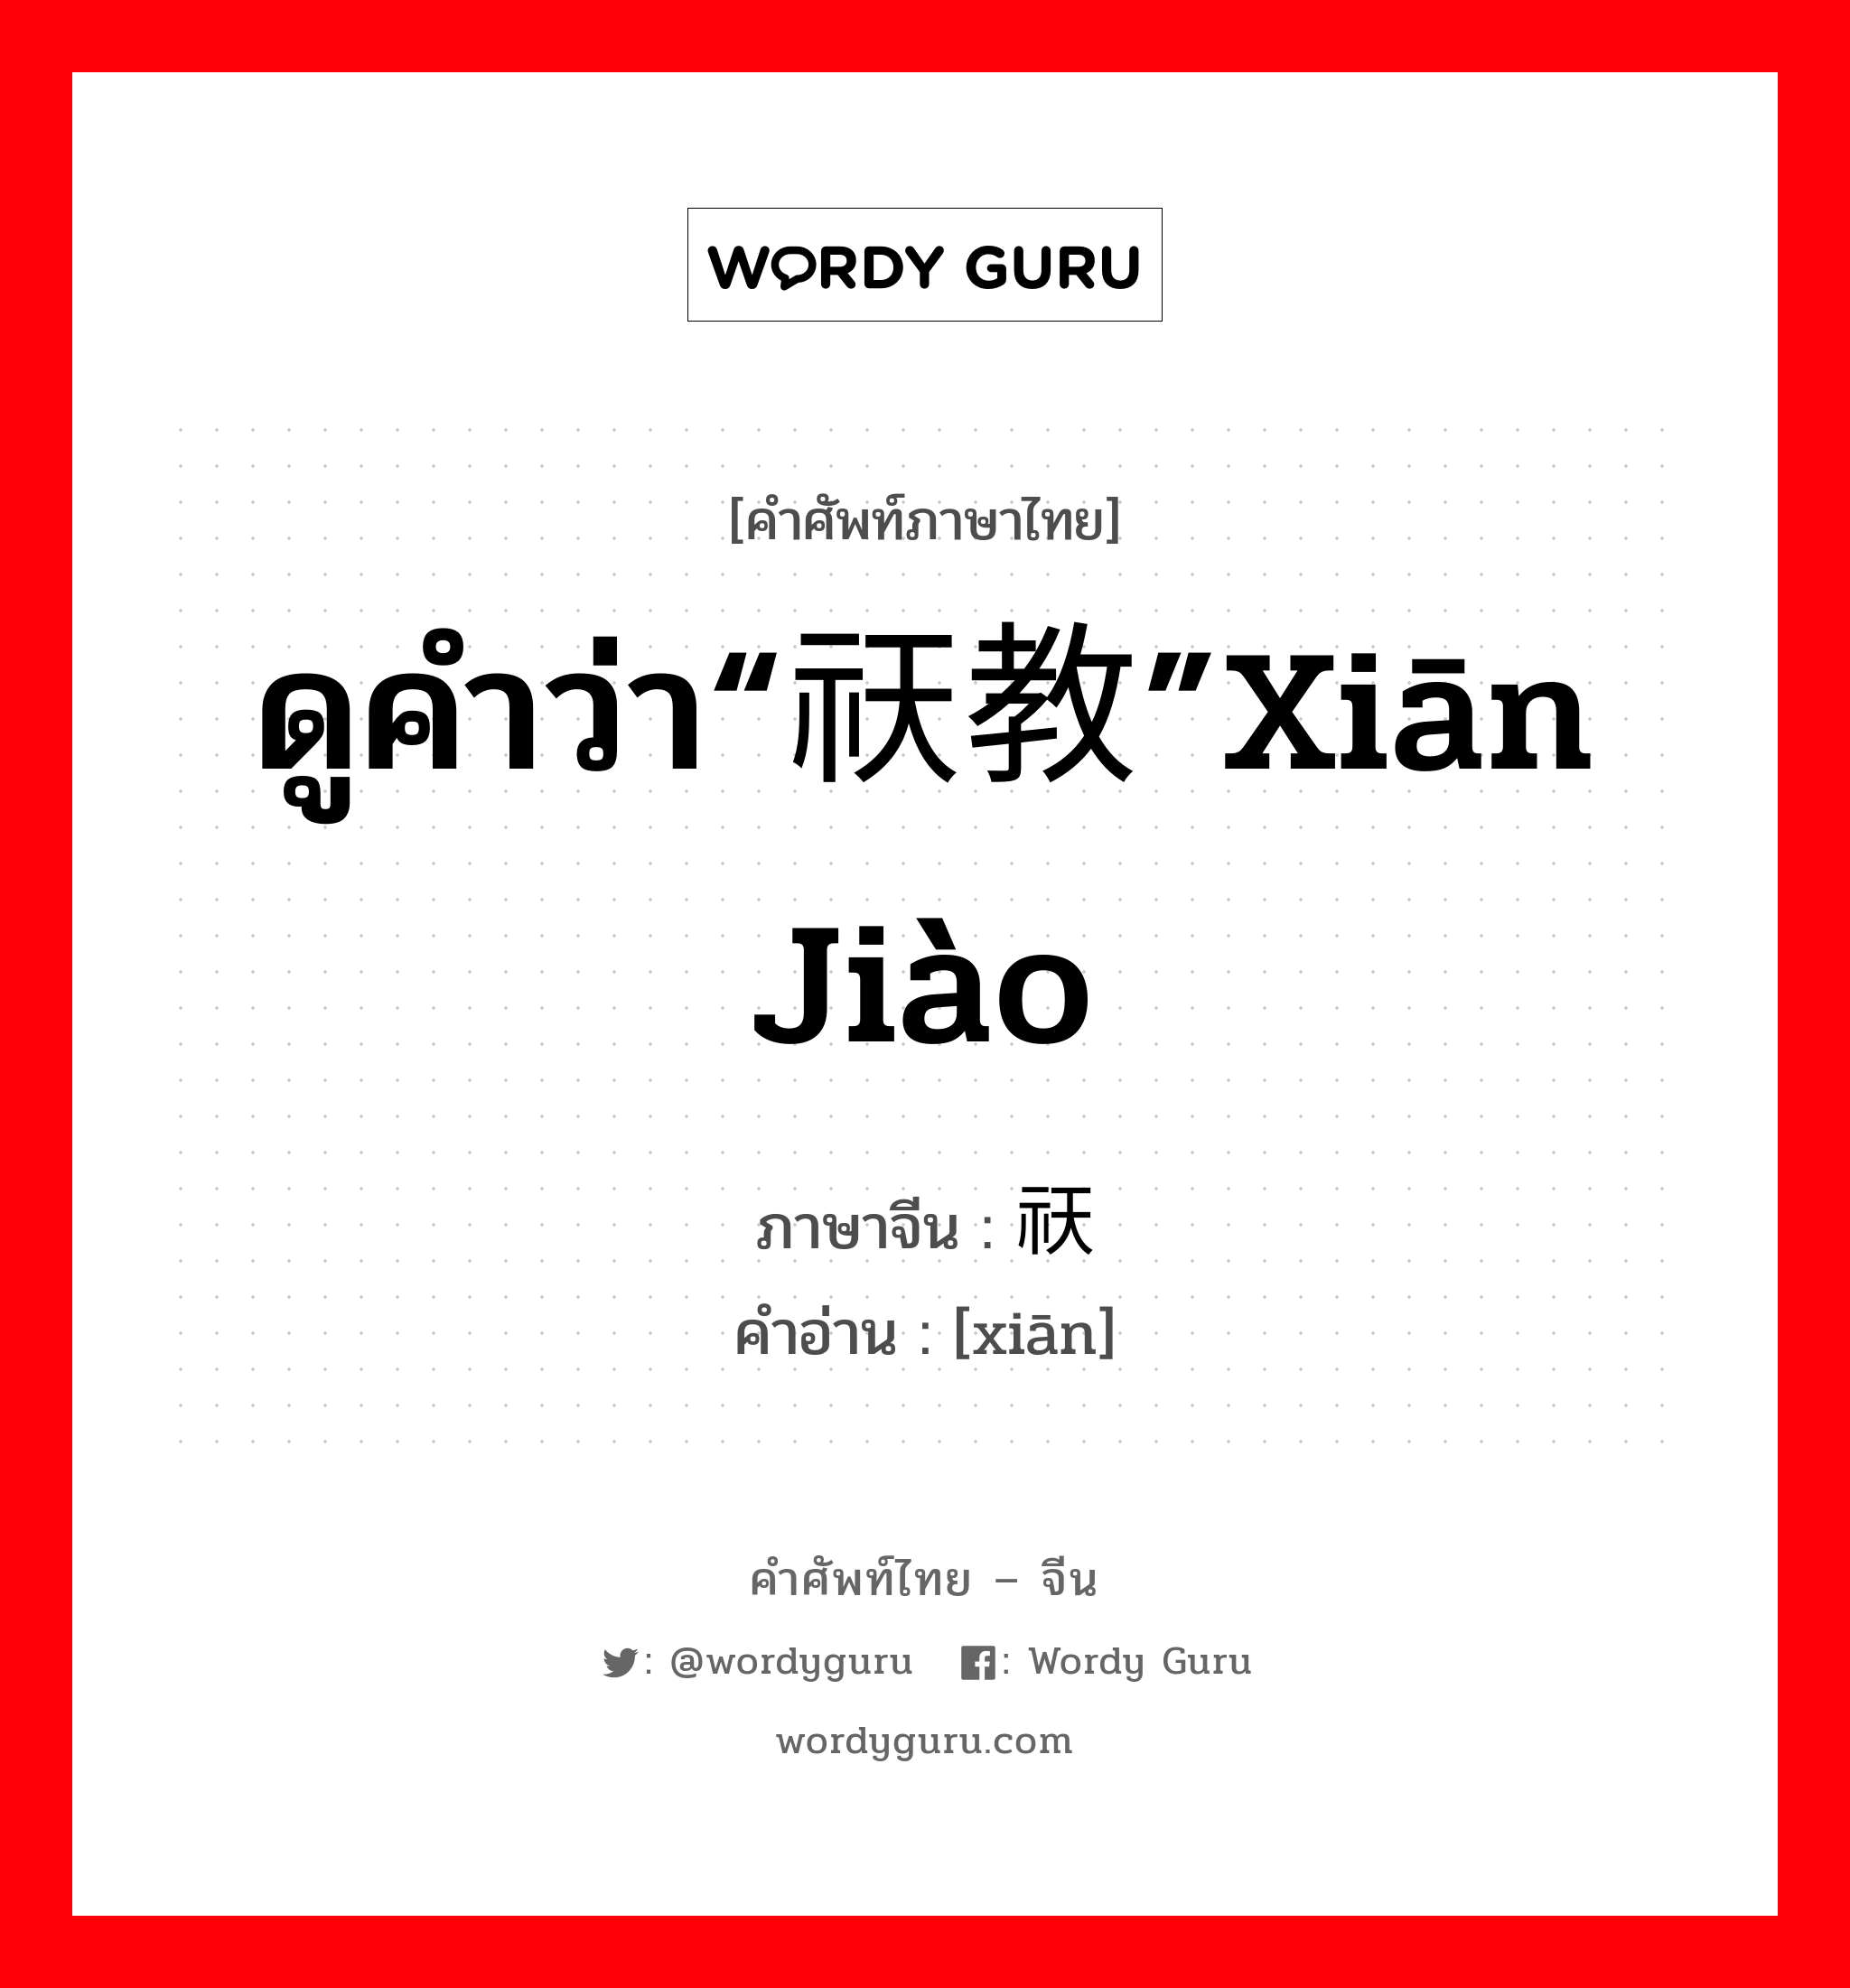 ดูคำว่า“祆教”xiān jiào ภาษาจีนคืออะไร, คำศัพท์ภาษาไทย - จีน ดูคำว่า“祆教”xiān jiào ภาษาจีน 祆 คำอ่าน [xiān]